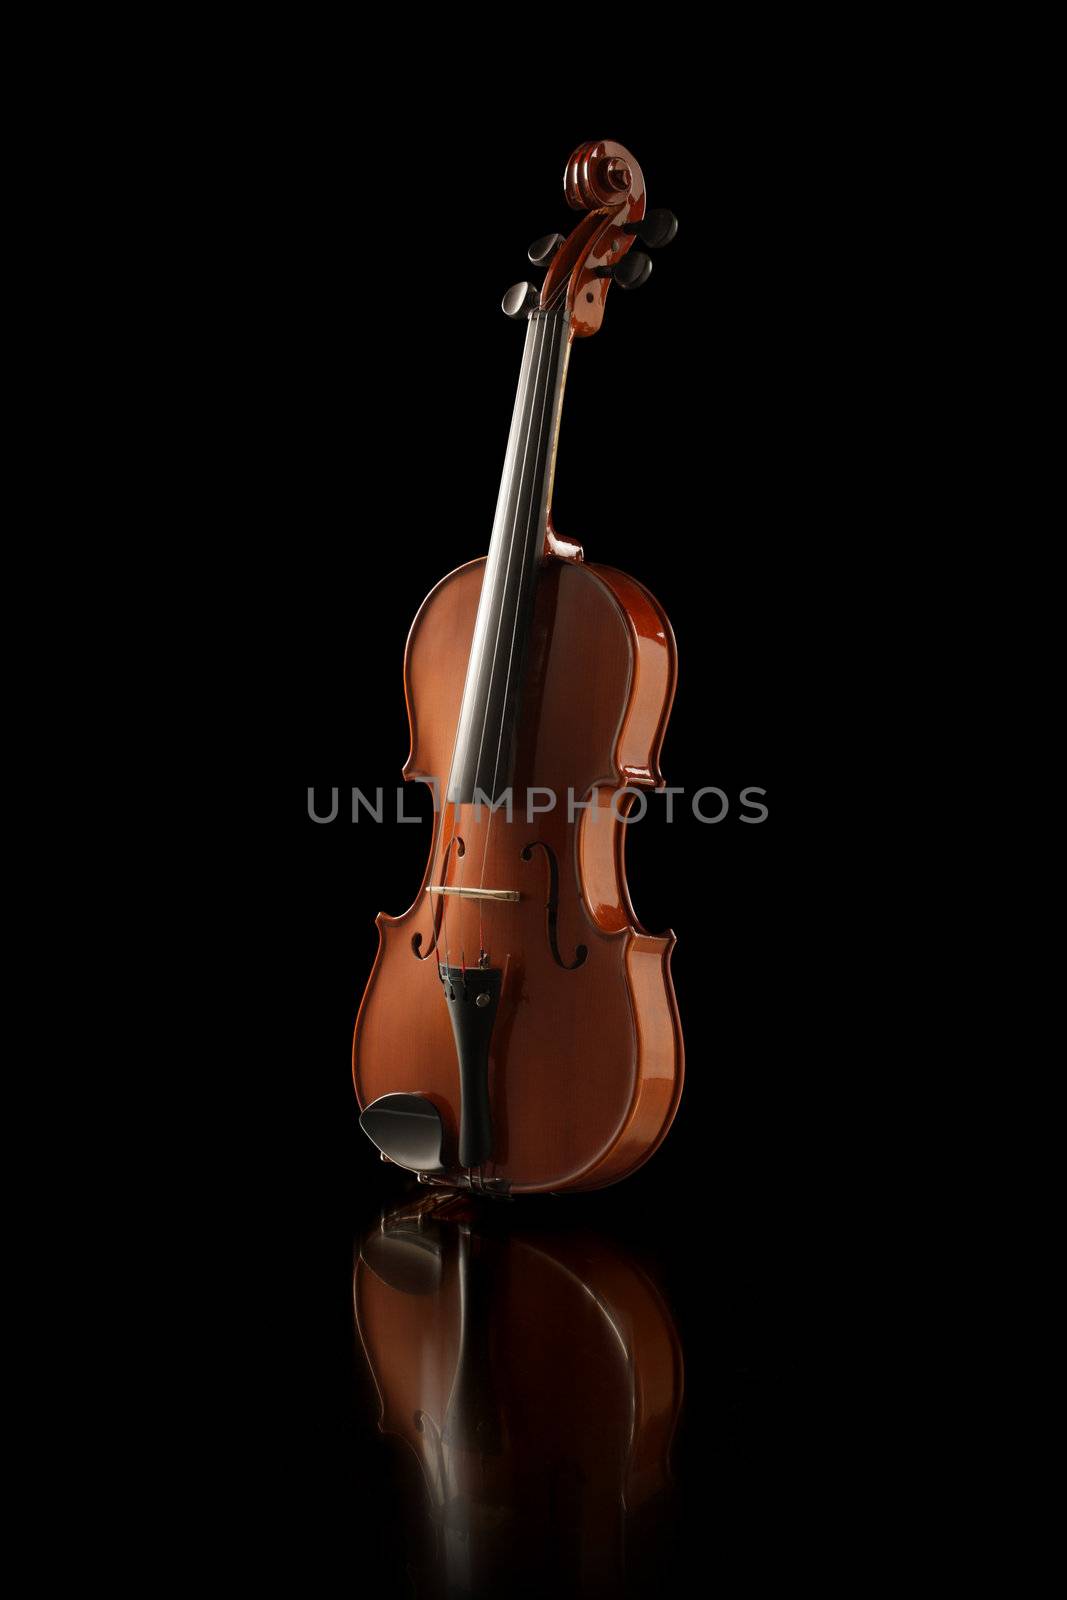 Elegant shot of a violin on black background